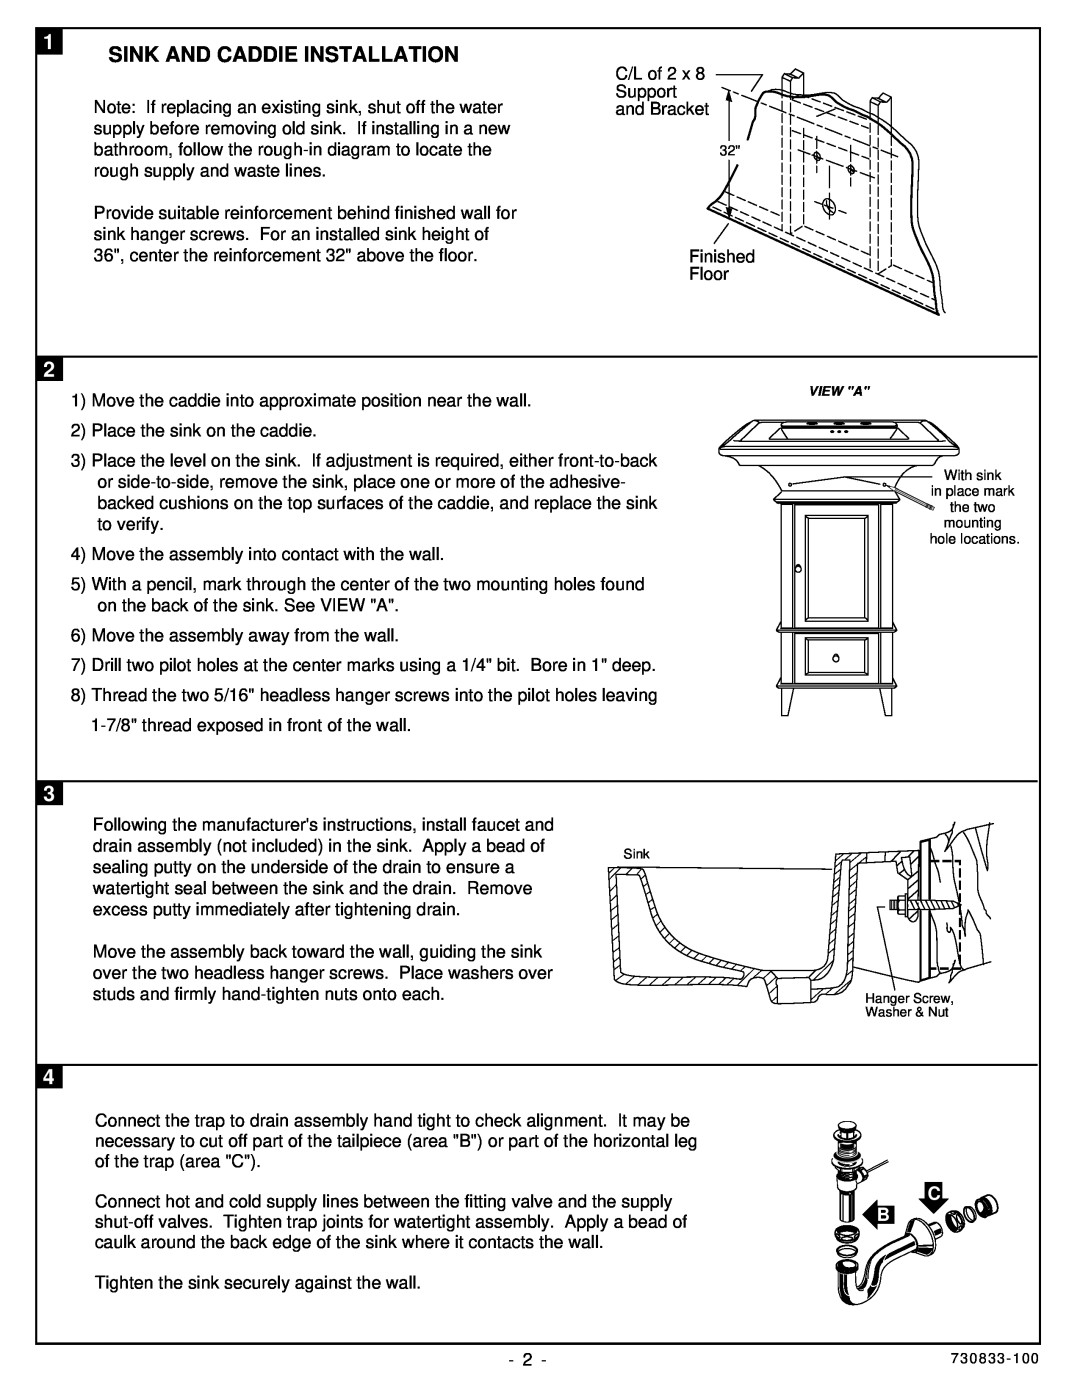 American Standard 9374.335.XXX, 9371.335.XXX, 9378.335.XXX installation instructions Sink And Caddie Installation 